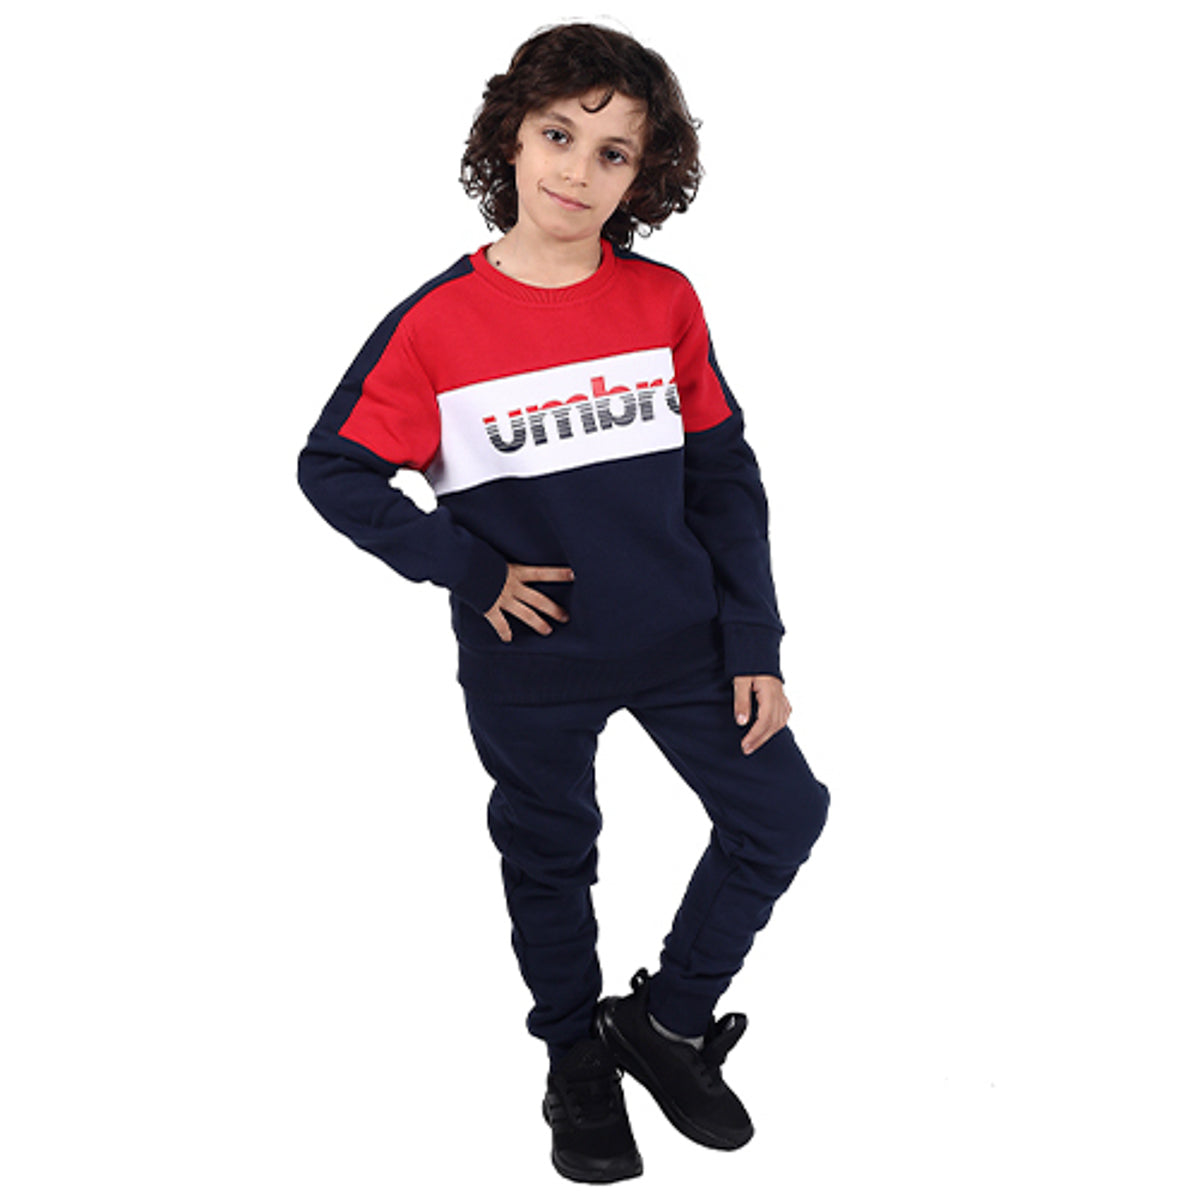 חליפת UMBRO פוטר לוגו באמצע לילדים